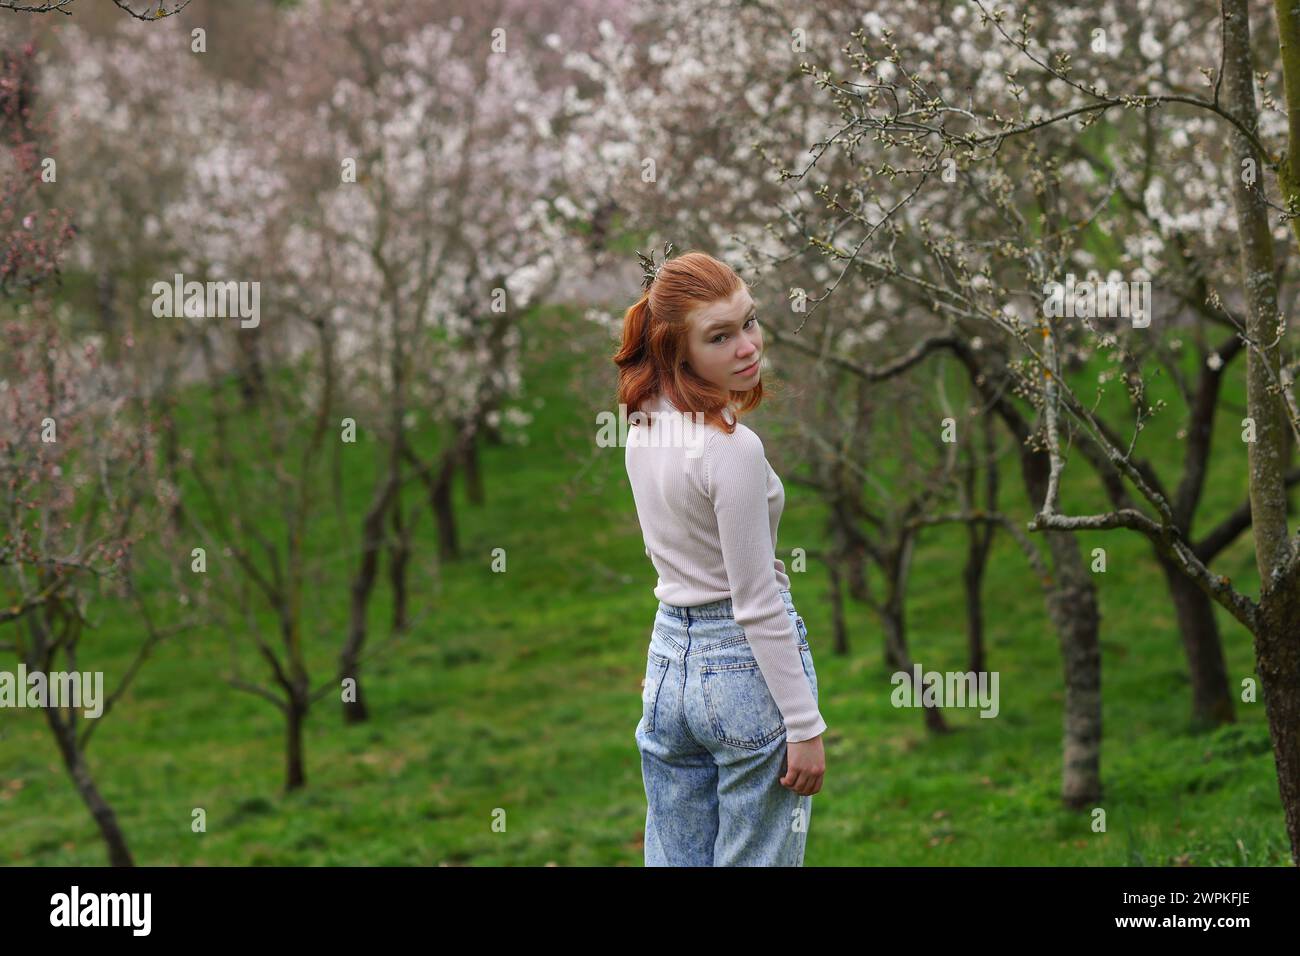 Frühling wunderschönes, romantisches rothaariges Mädchen, das im blühenden Garten steht. Stockfoto